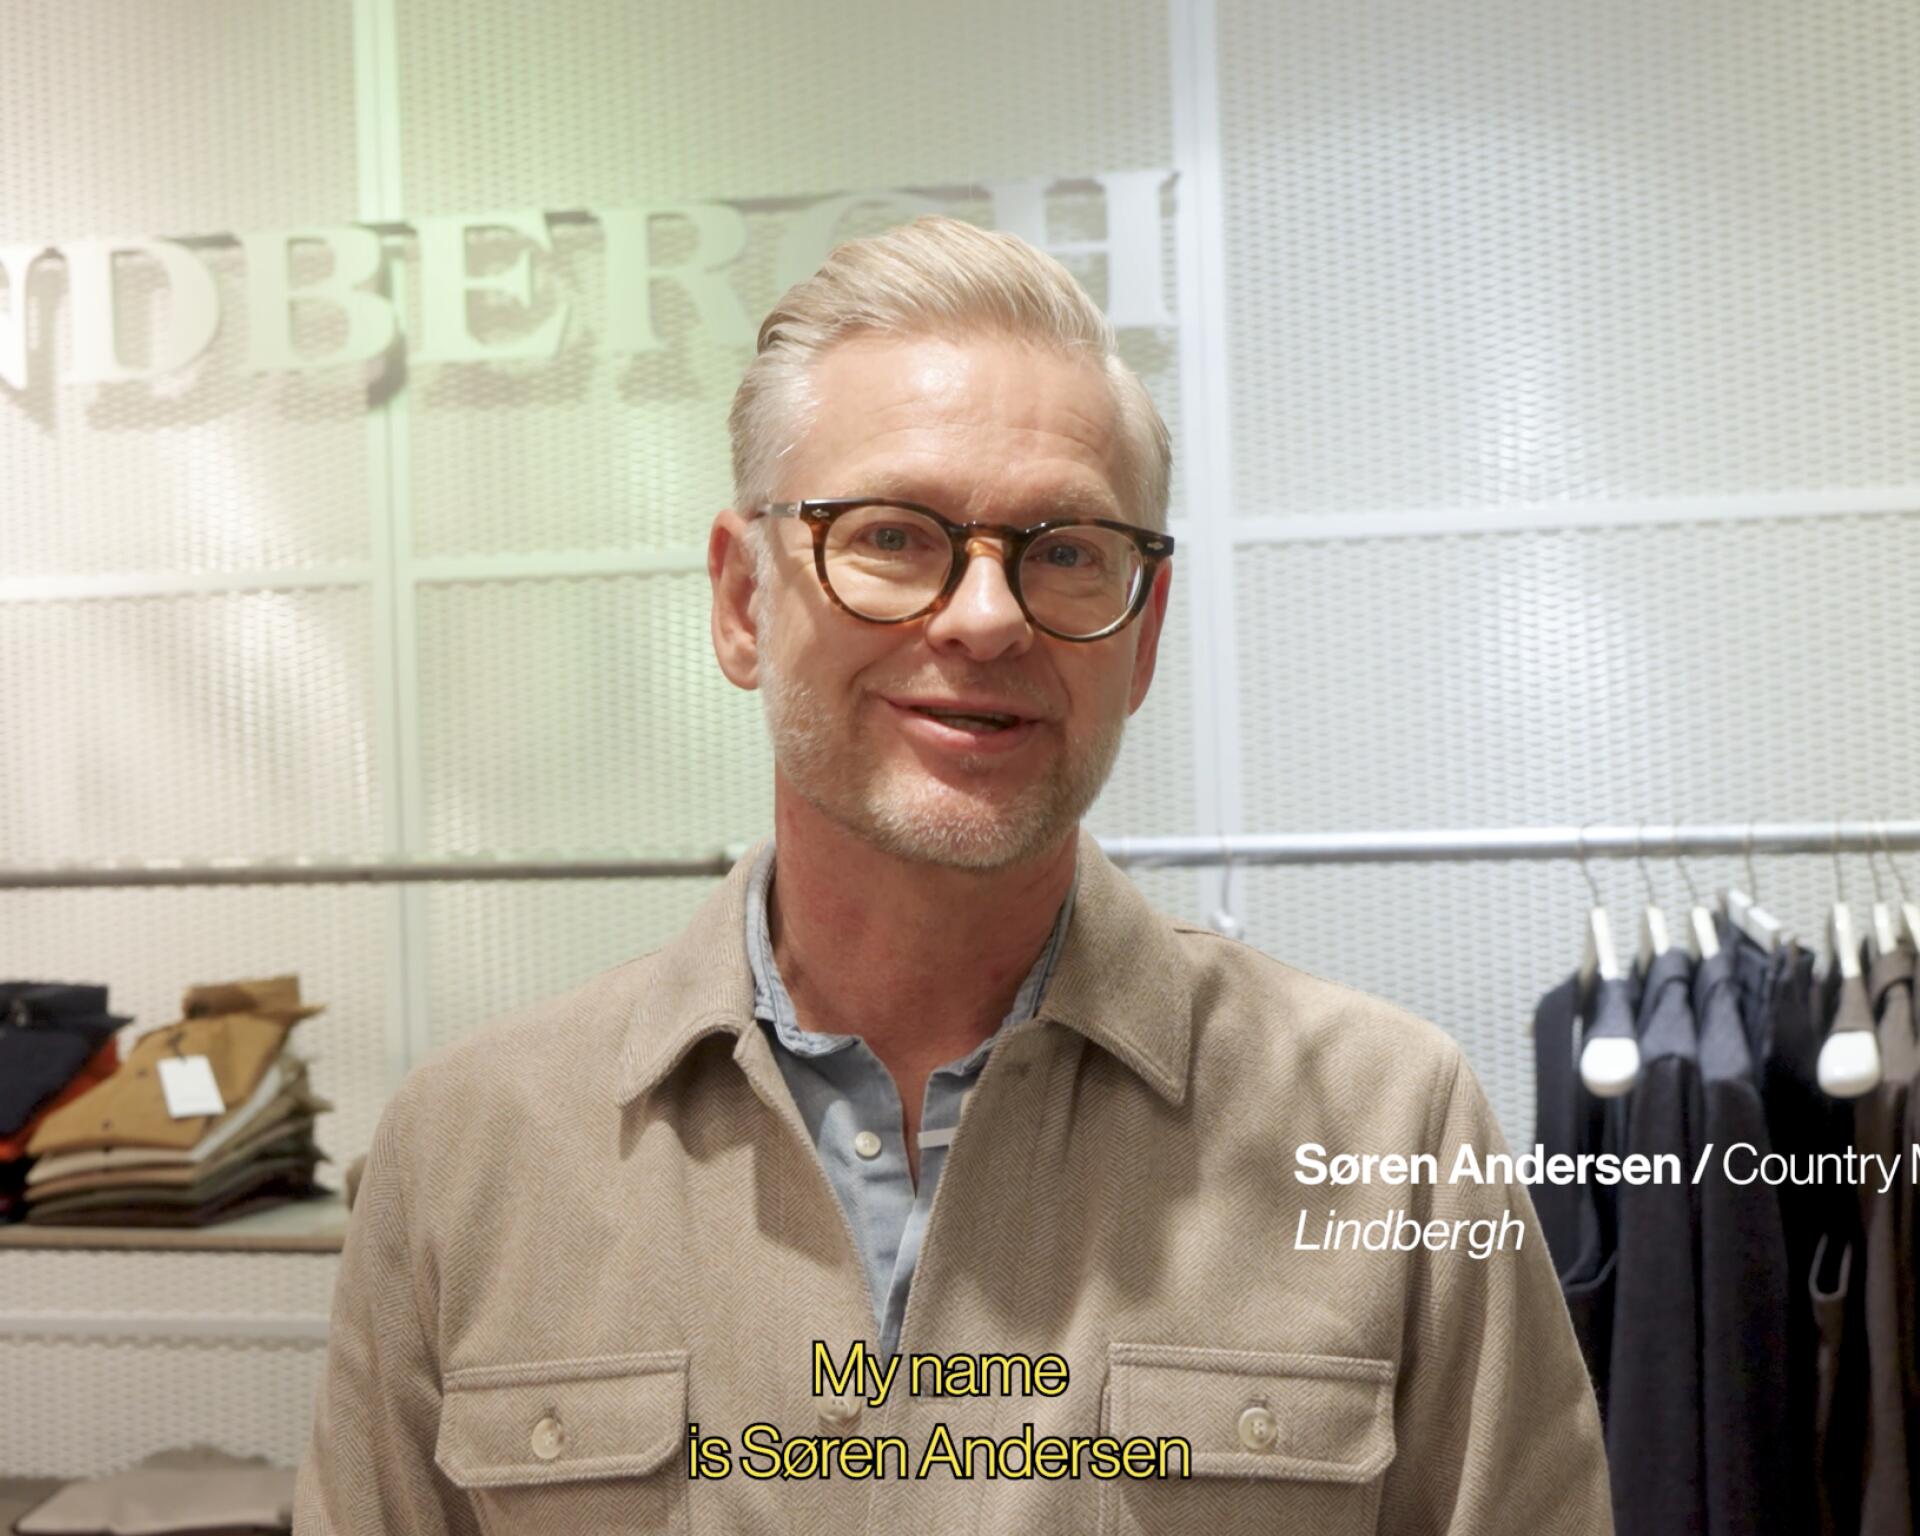 Meet the Staff: Søren Andersen